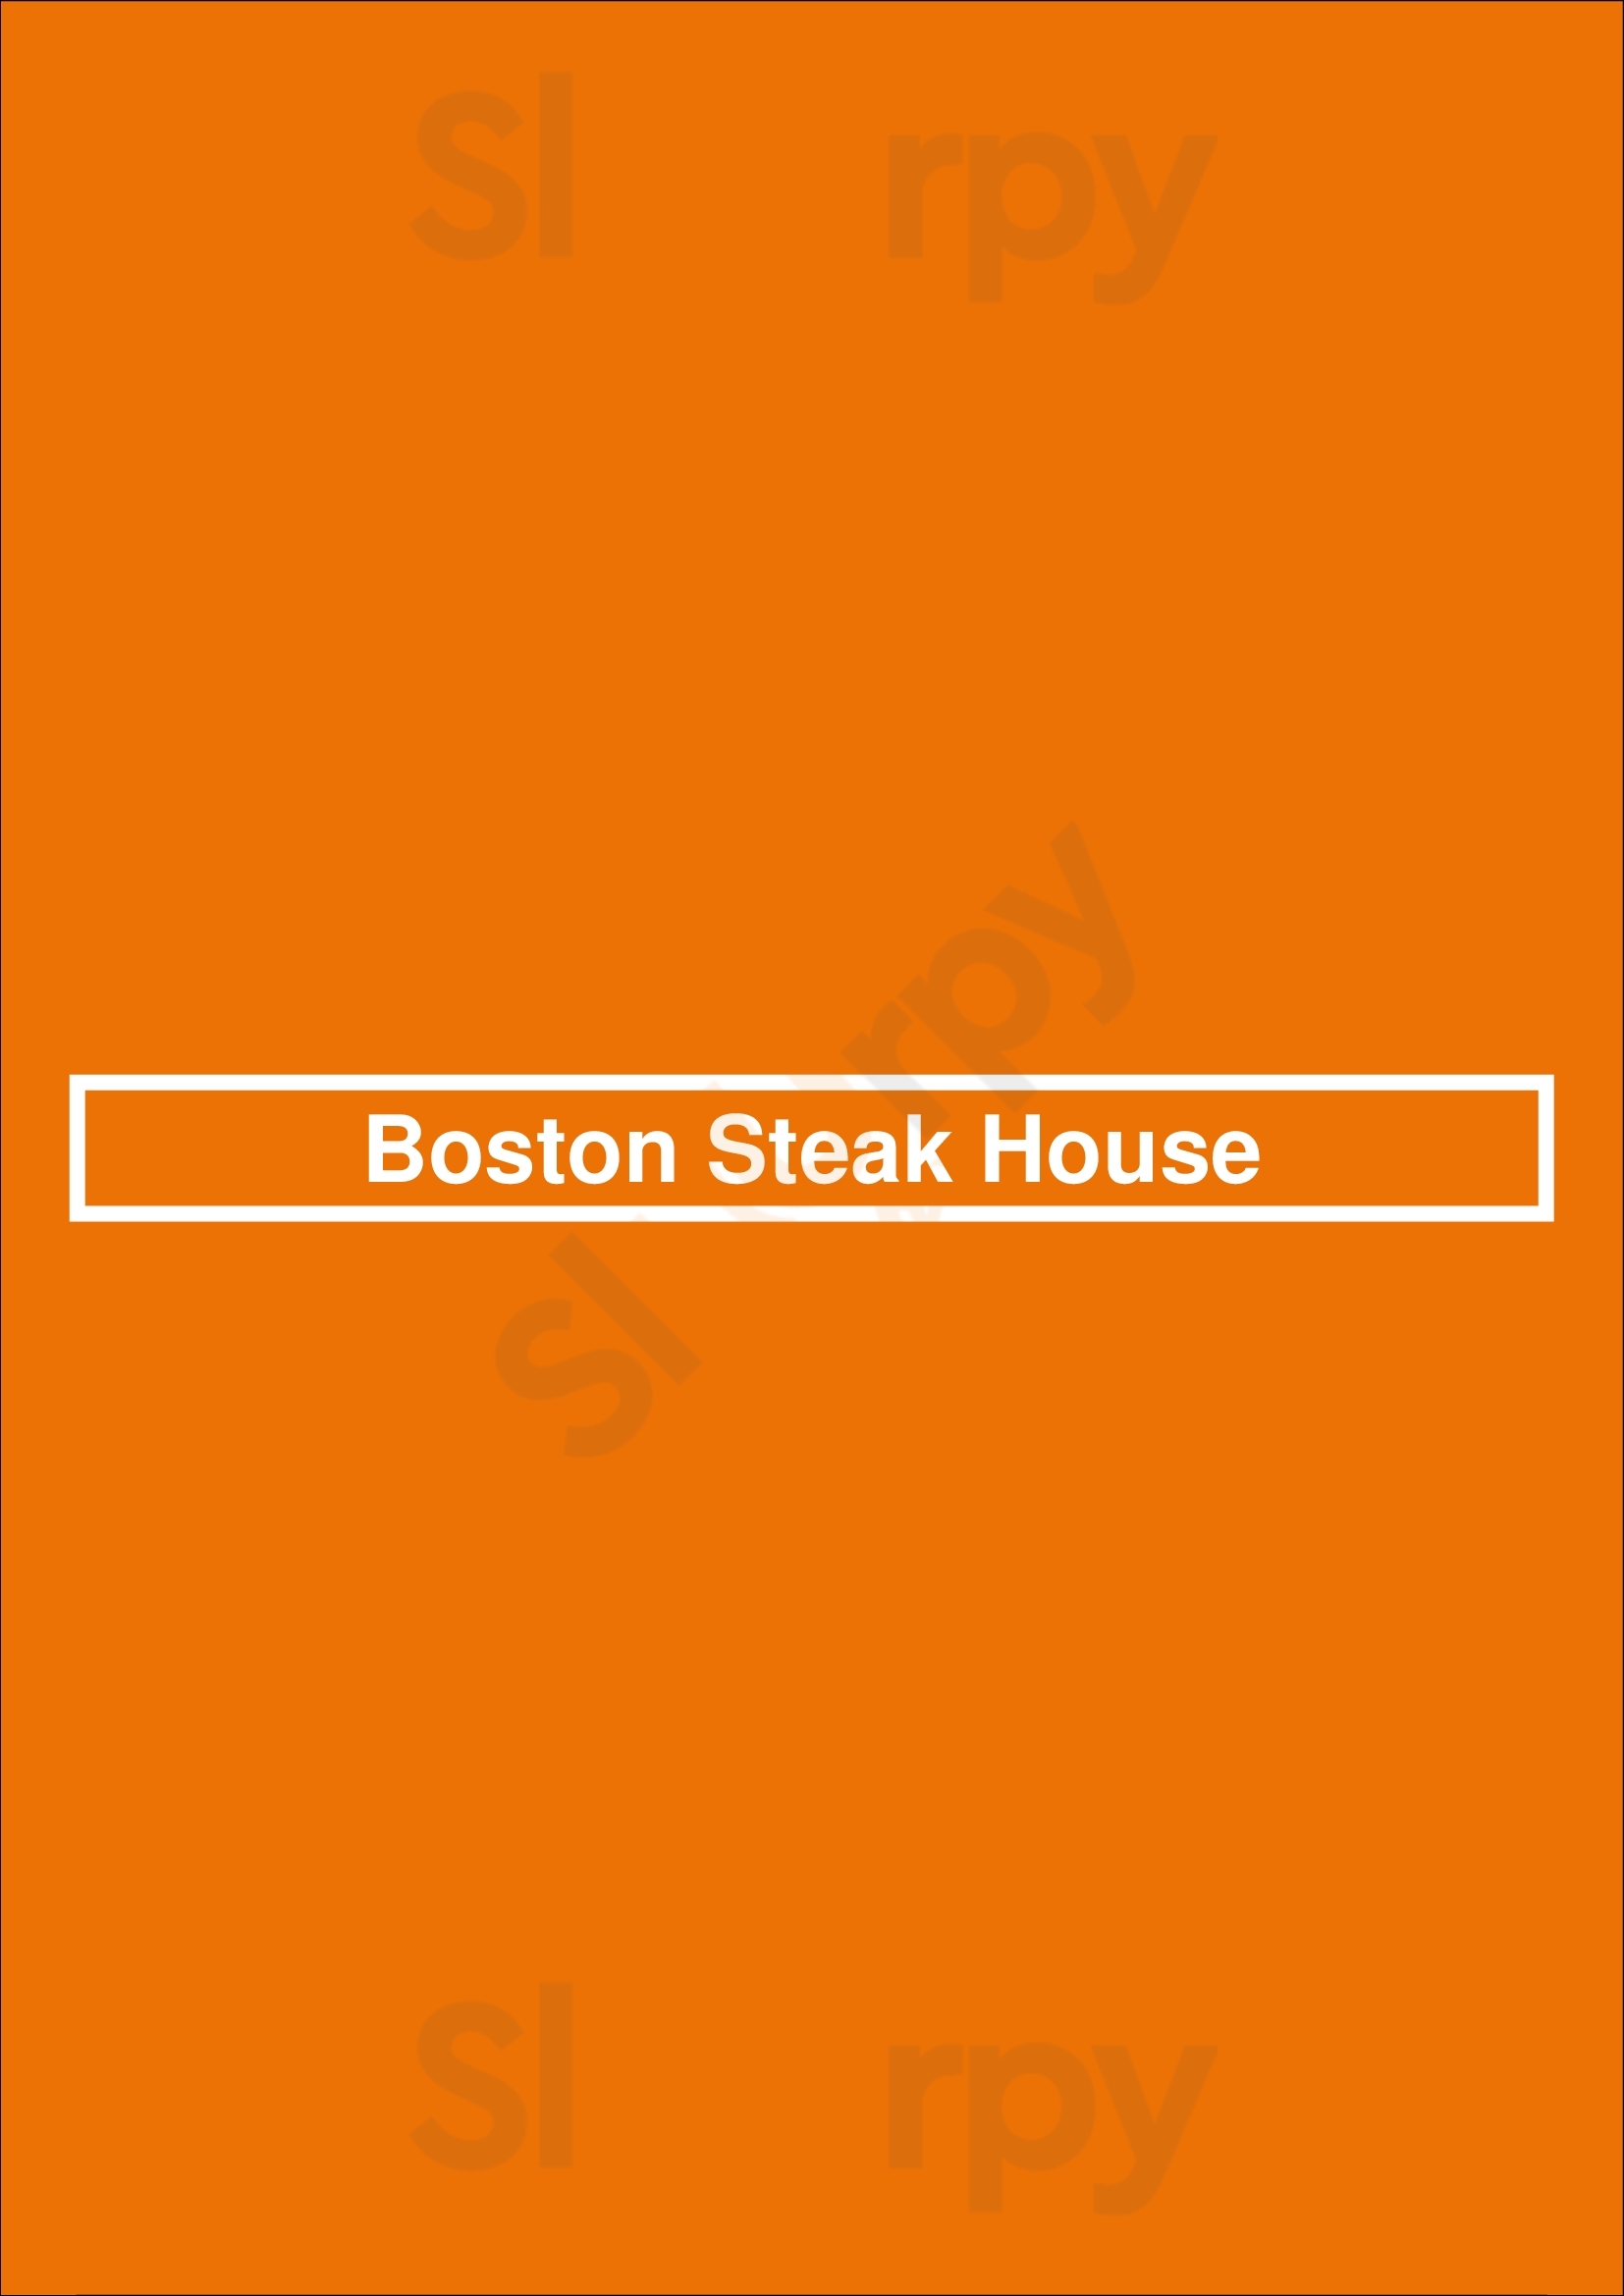 Boston Steak House Bruxelles Menu - 1